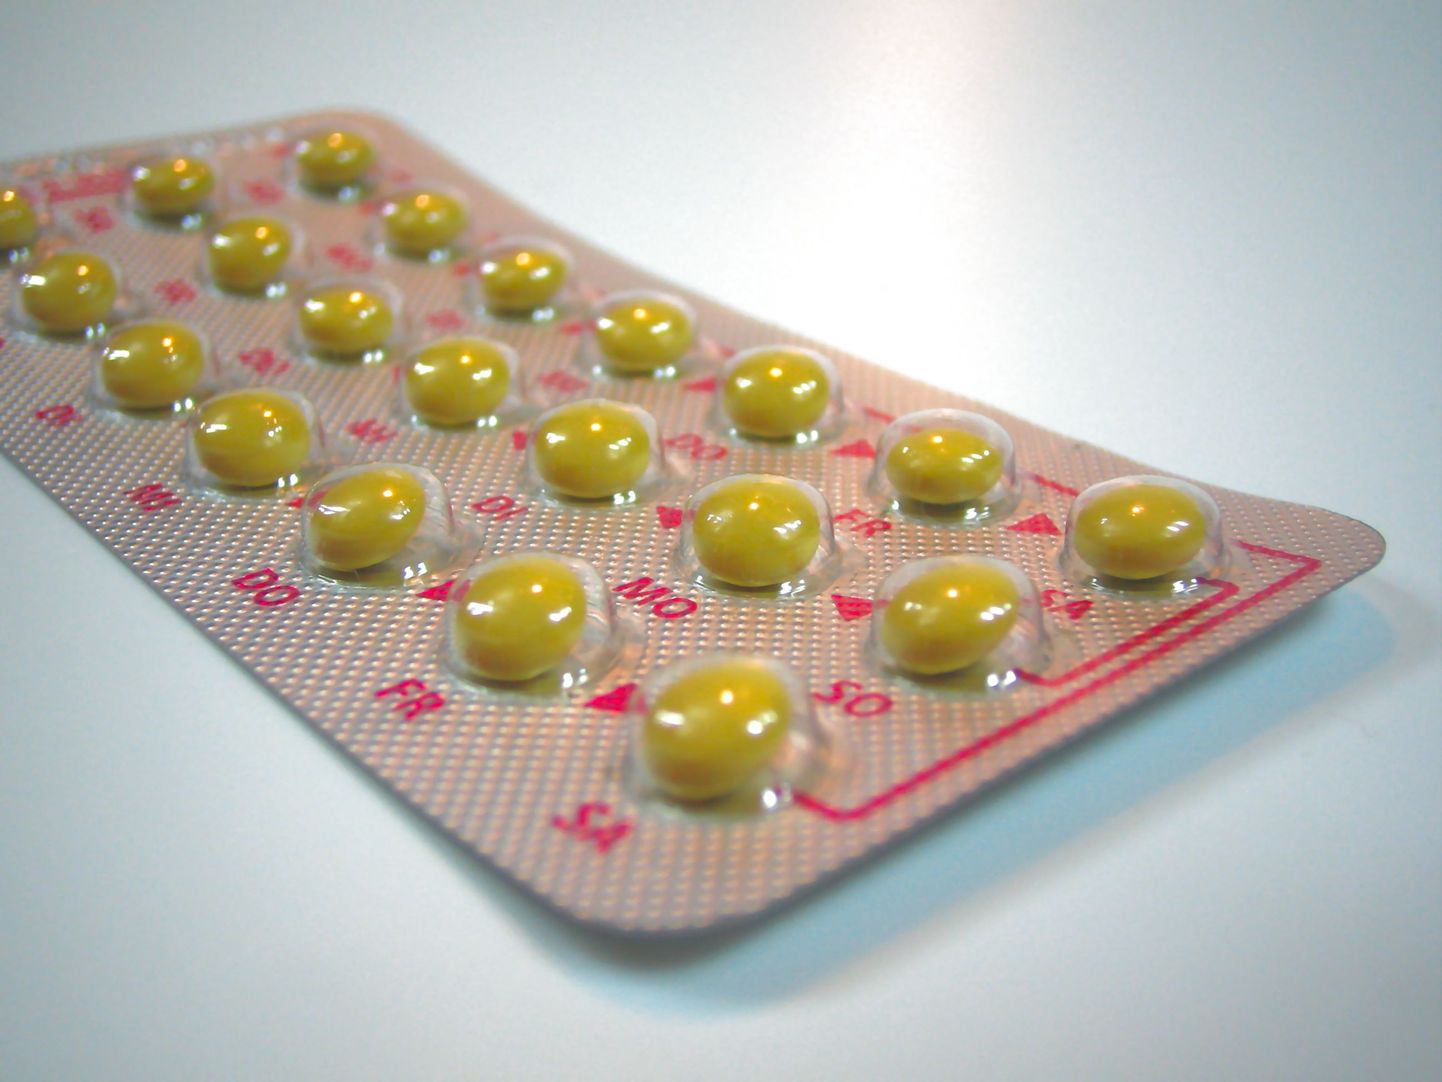 Rasestumisvastased tabletid